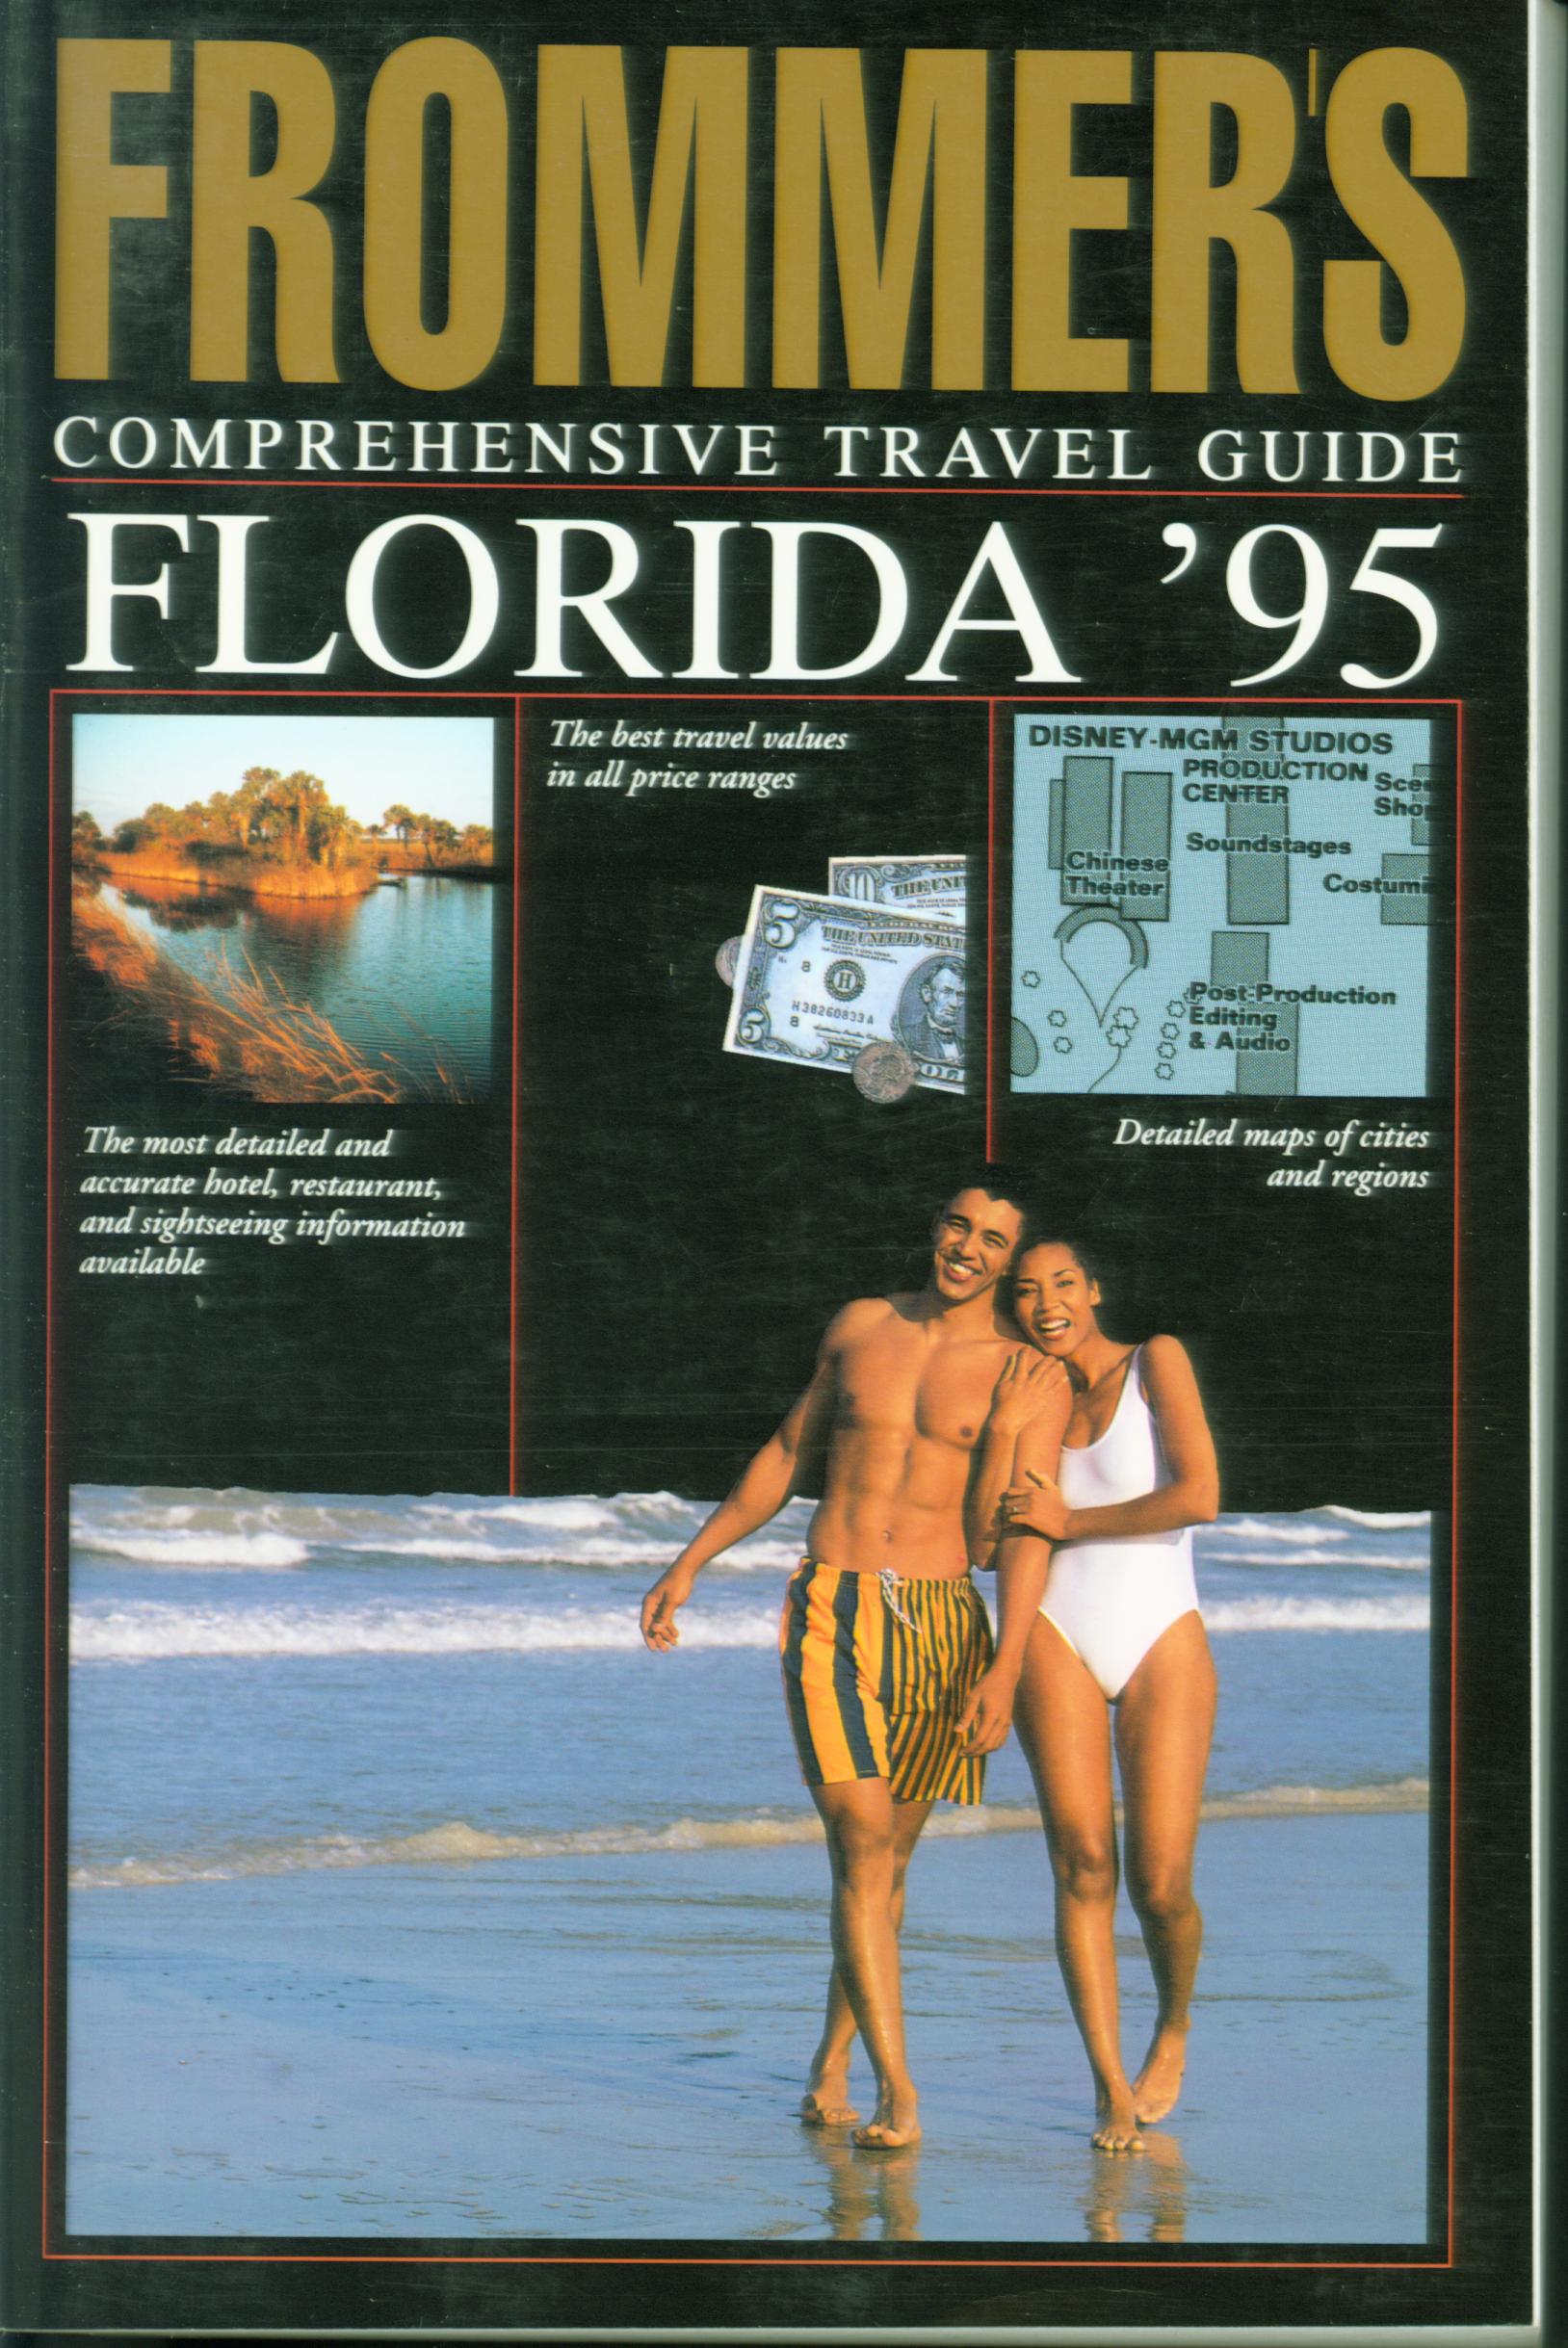 FROMMER'S COMPREHENSIVE TRAVEL GUIIDE: Florida '95. 